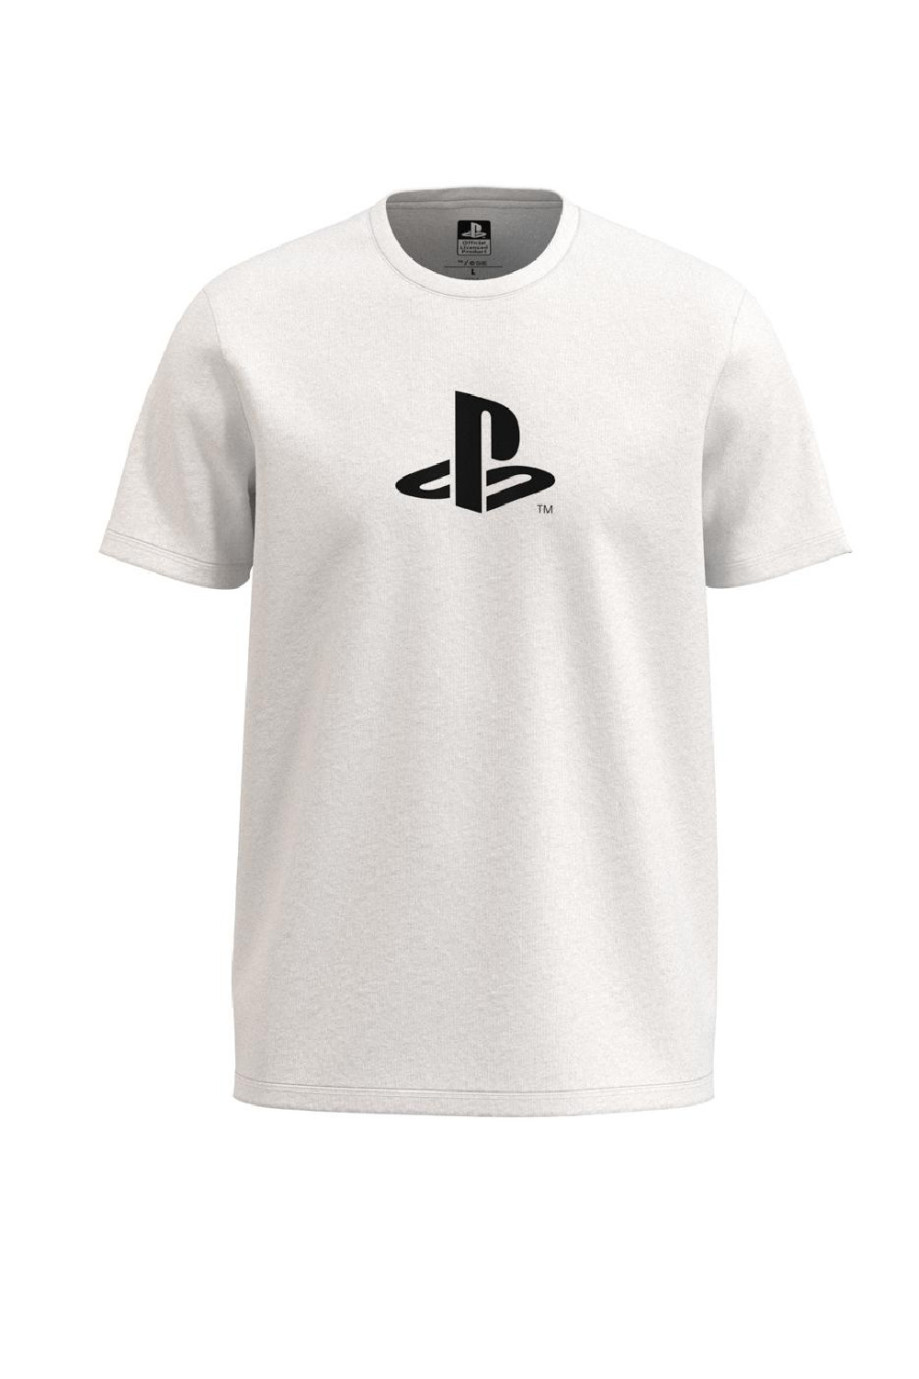 Camiseta unicolor en algodón con diseño de PlayStation y cuello redondo